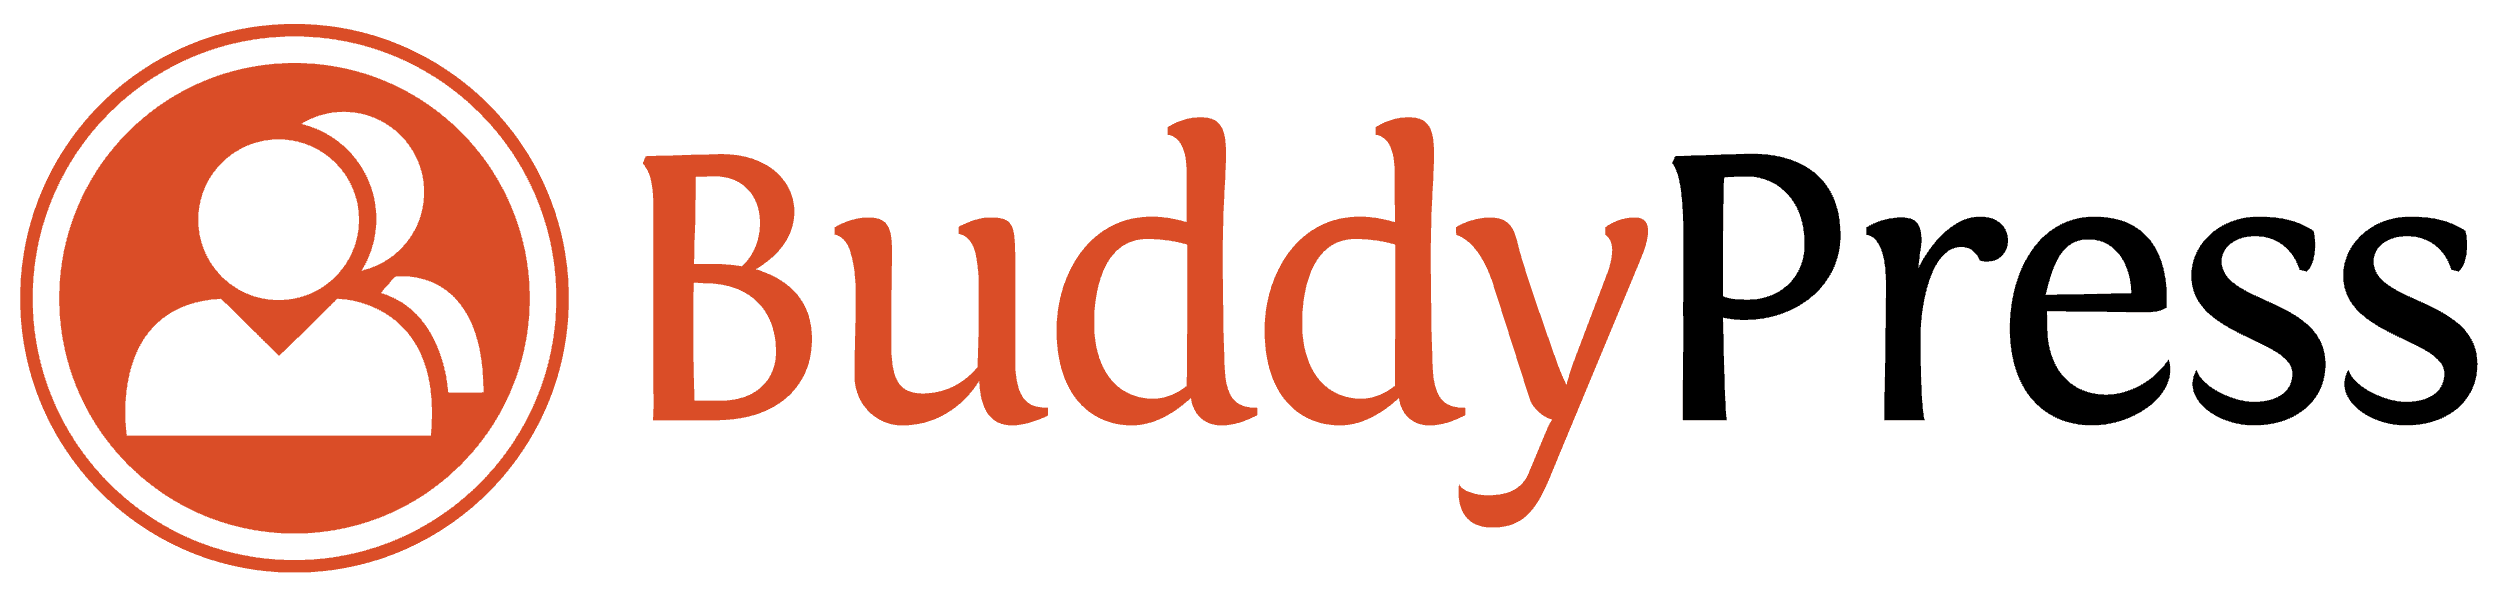 BuddyPress - Sociaal netwerk voor Wordpress